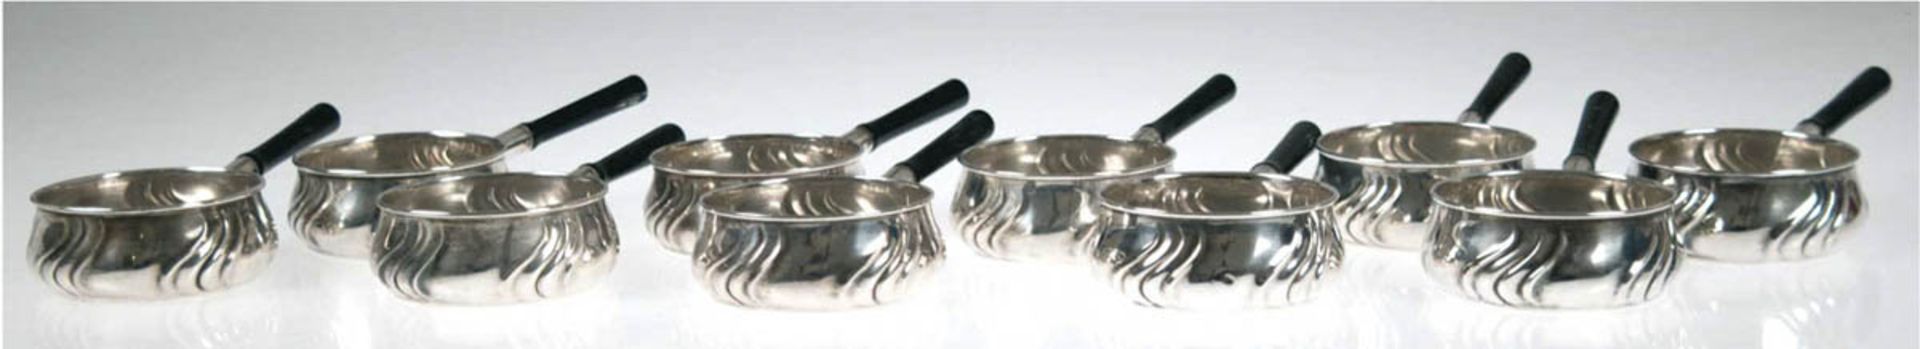 10 Butterpfännchen, 800er Silber, punziert, ca. 708 g, geschweift gerippte Form mitMonogrammgravur